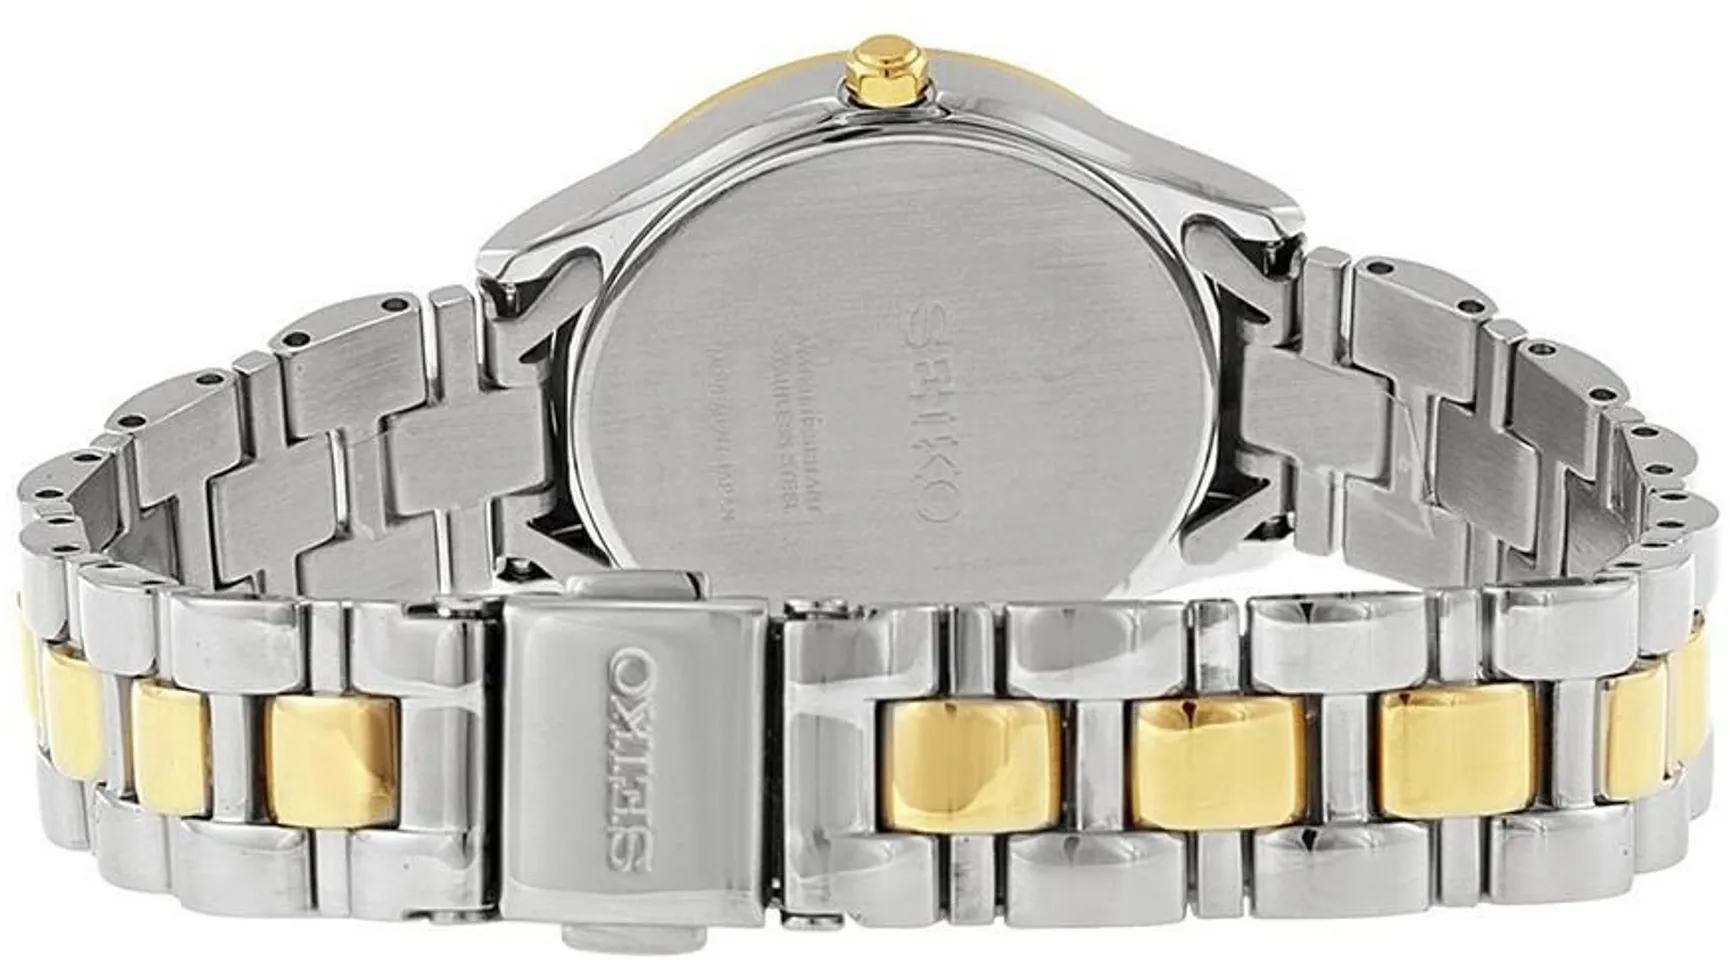 Thiết kế dây đồng hồ trẻ trung với 2 màu vàng - bạc, khóa bấm chắc chắn